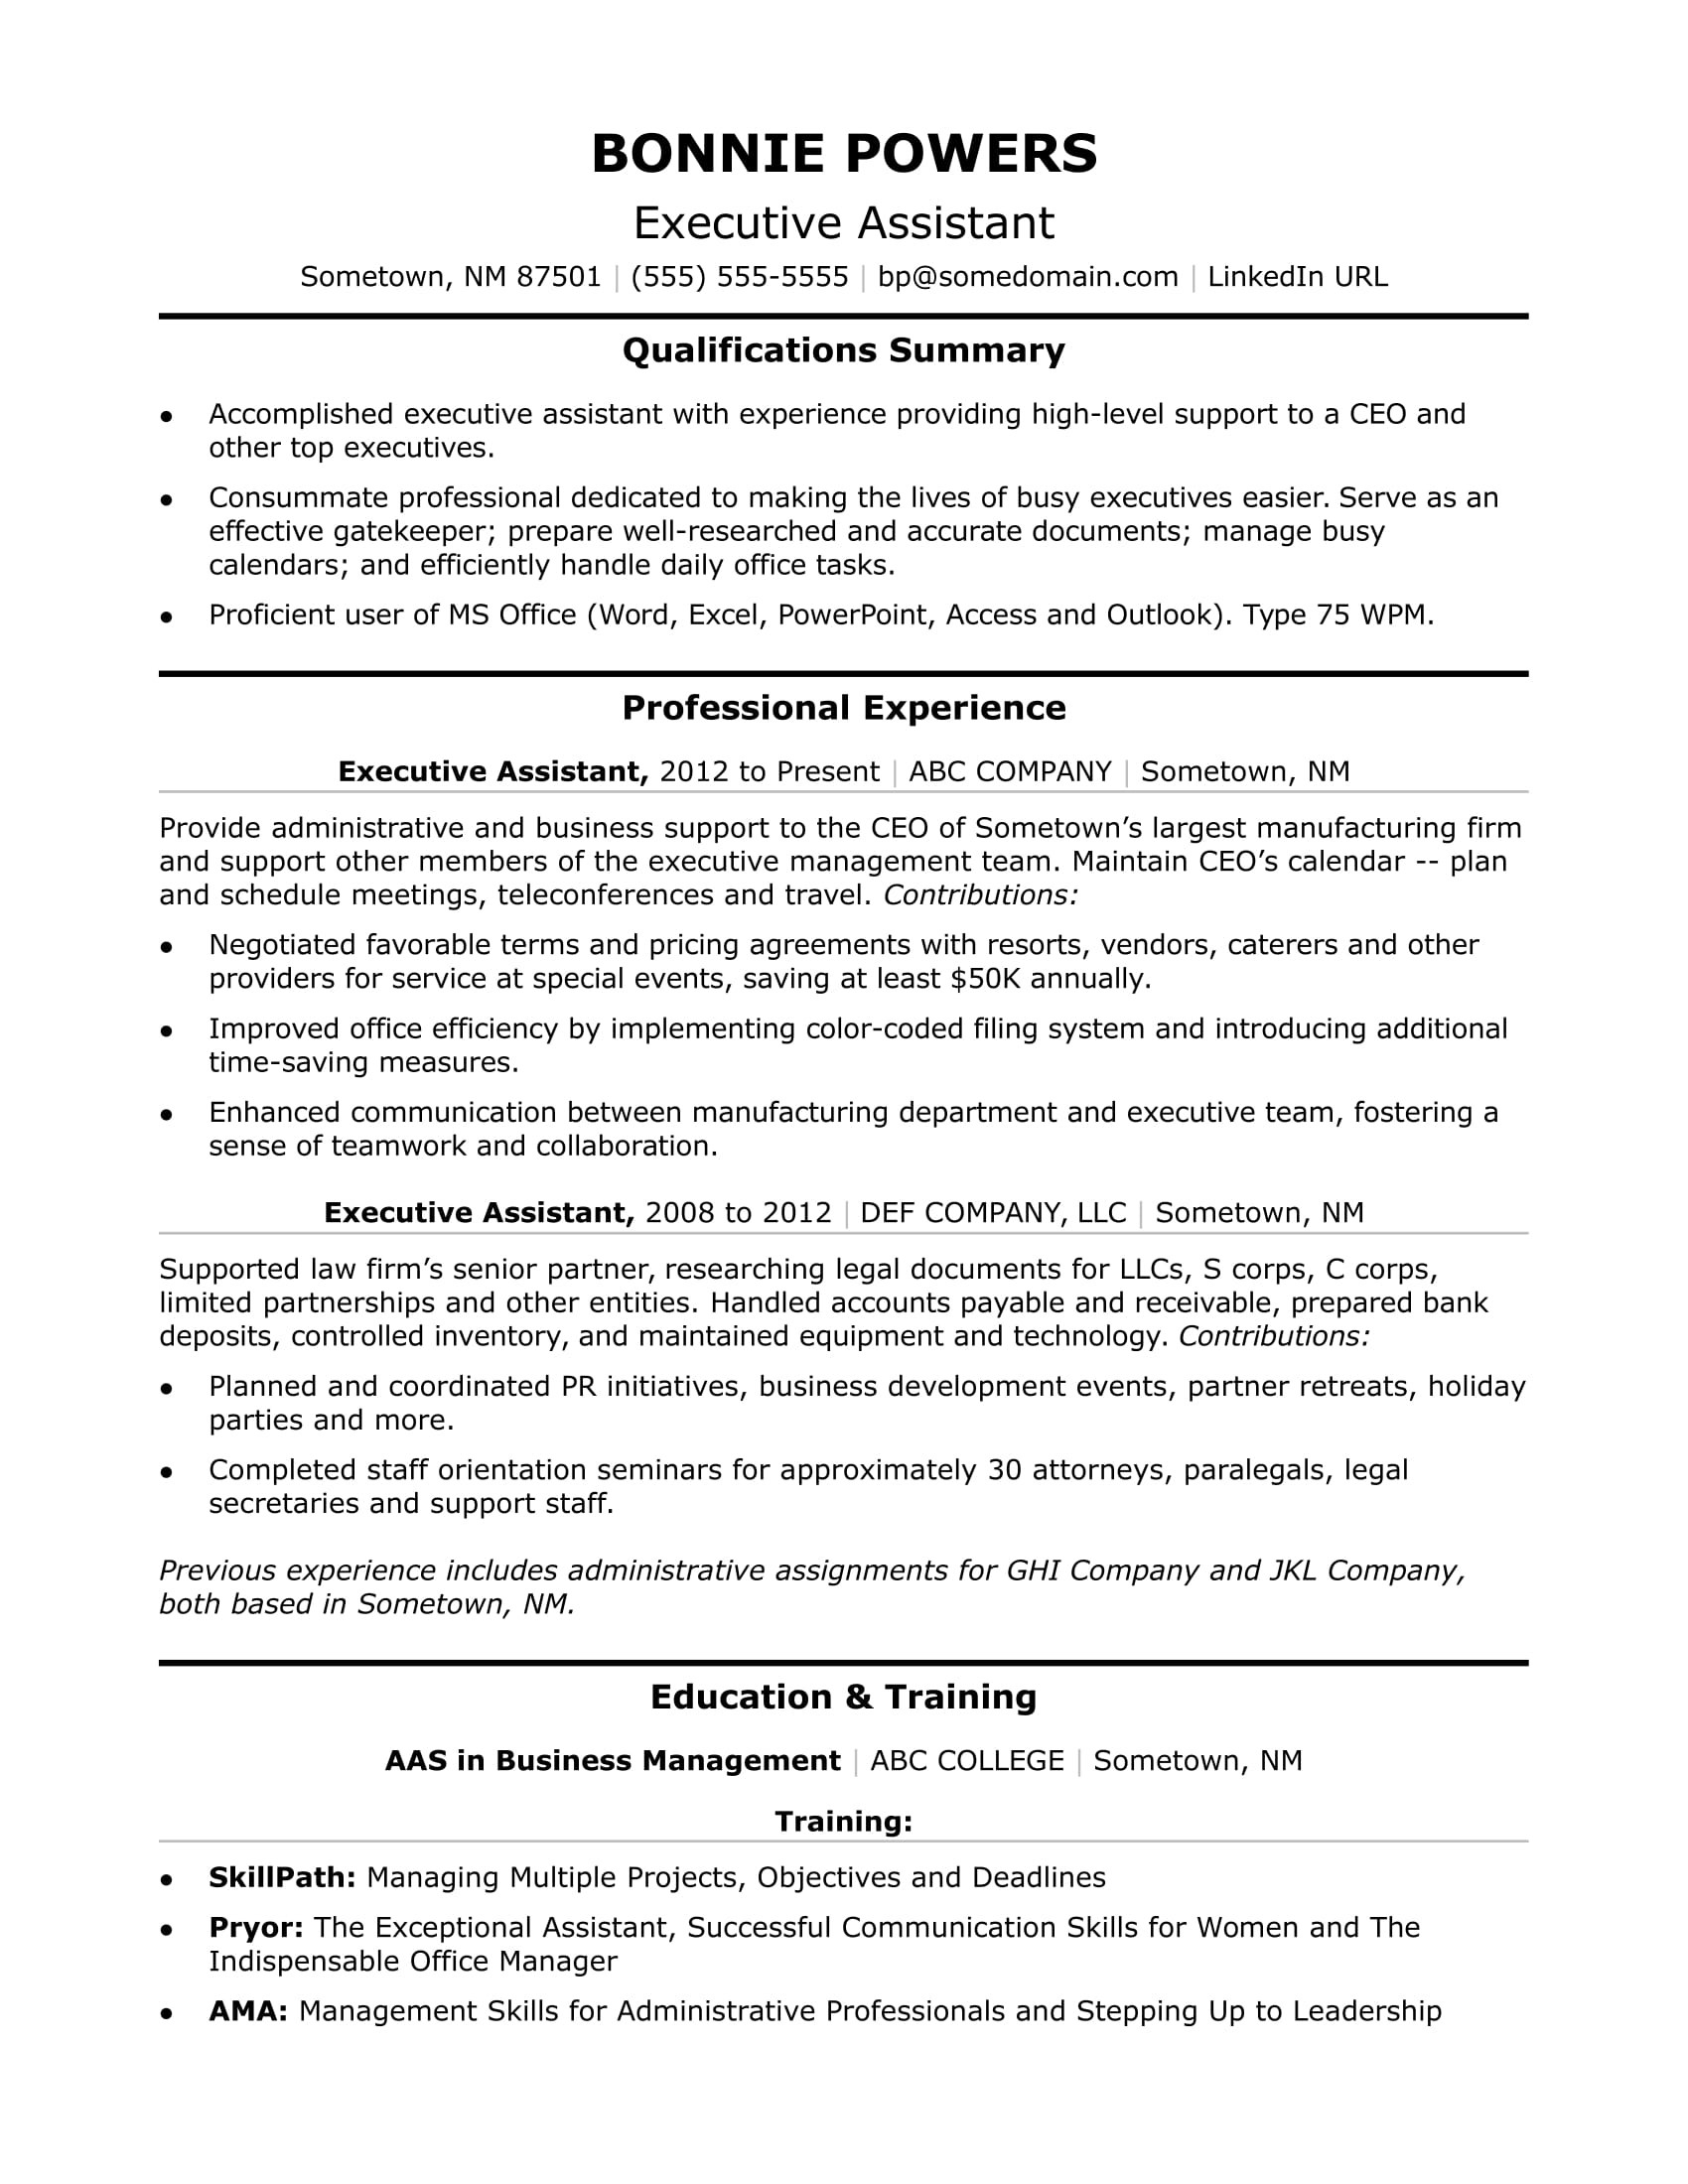 Executive assistant Job Description Resume Sample Executive Administrative assistant Resume Sample